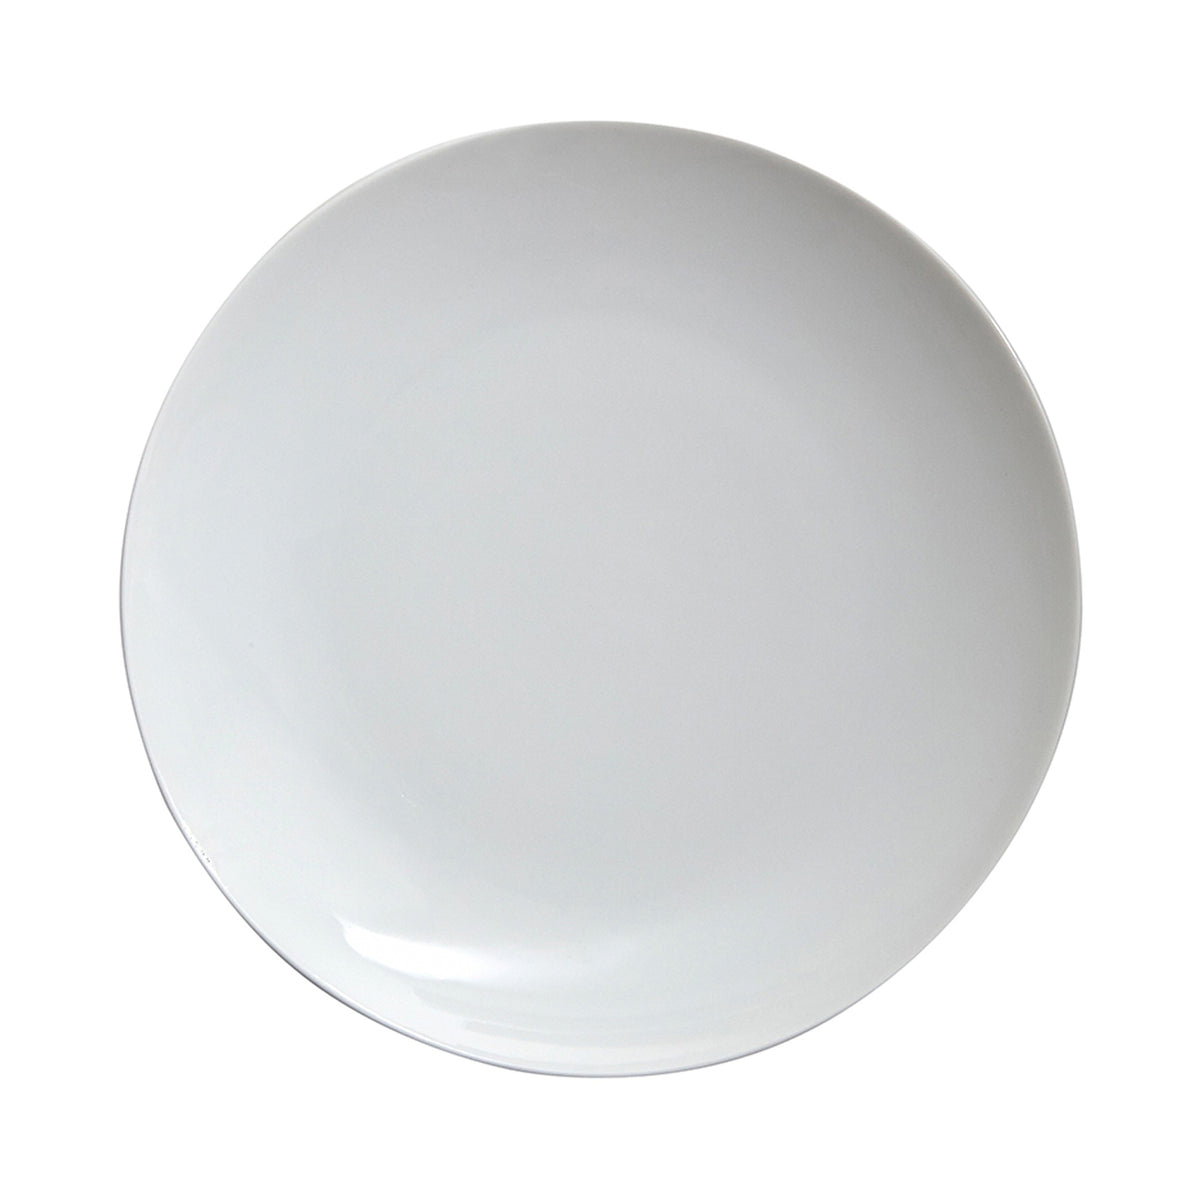 Medaillon White Porcelain Dinner Plate